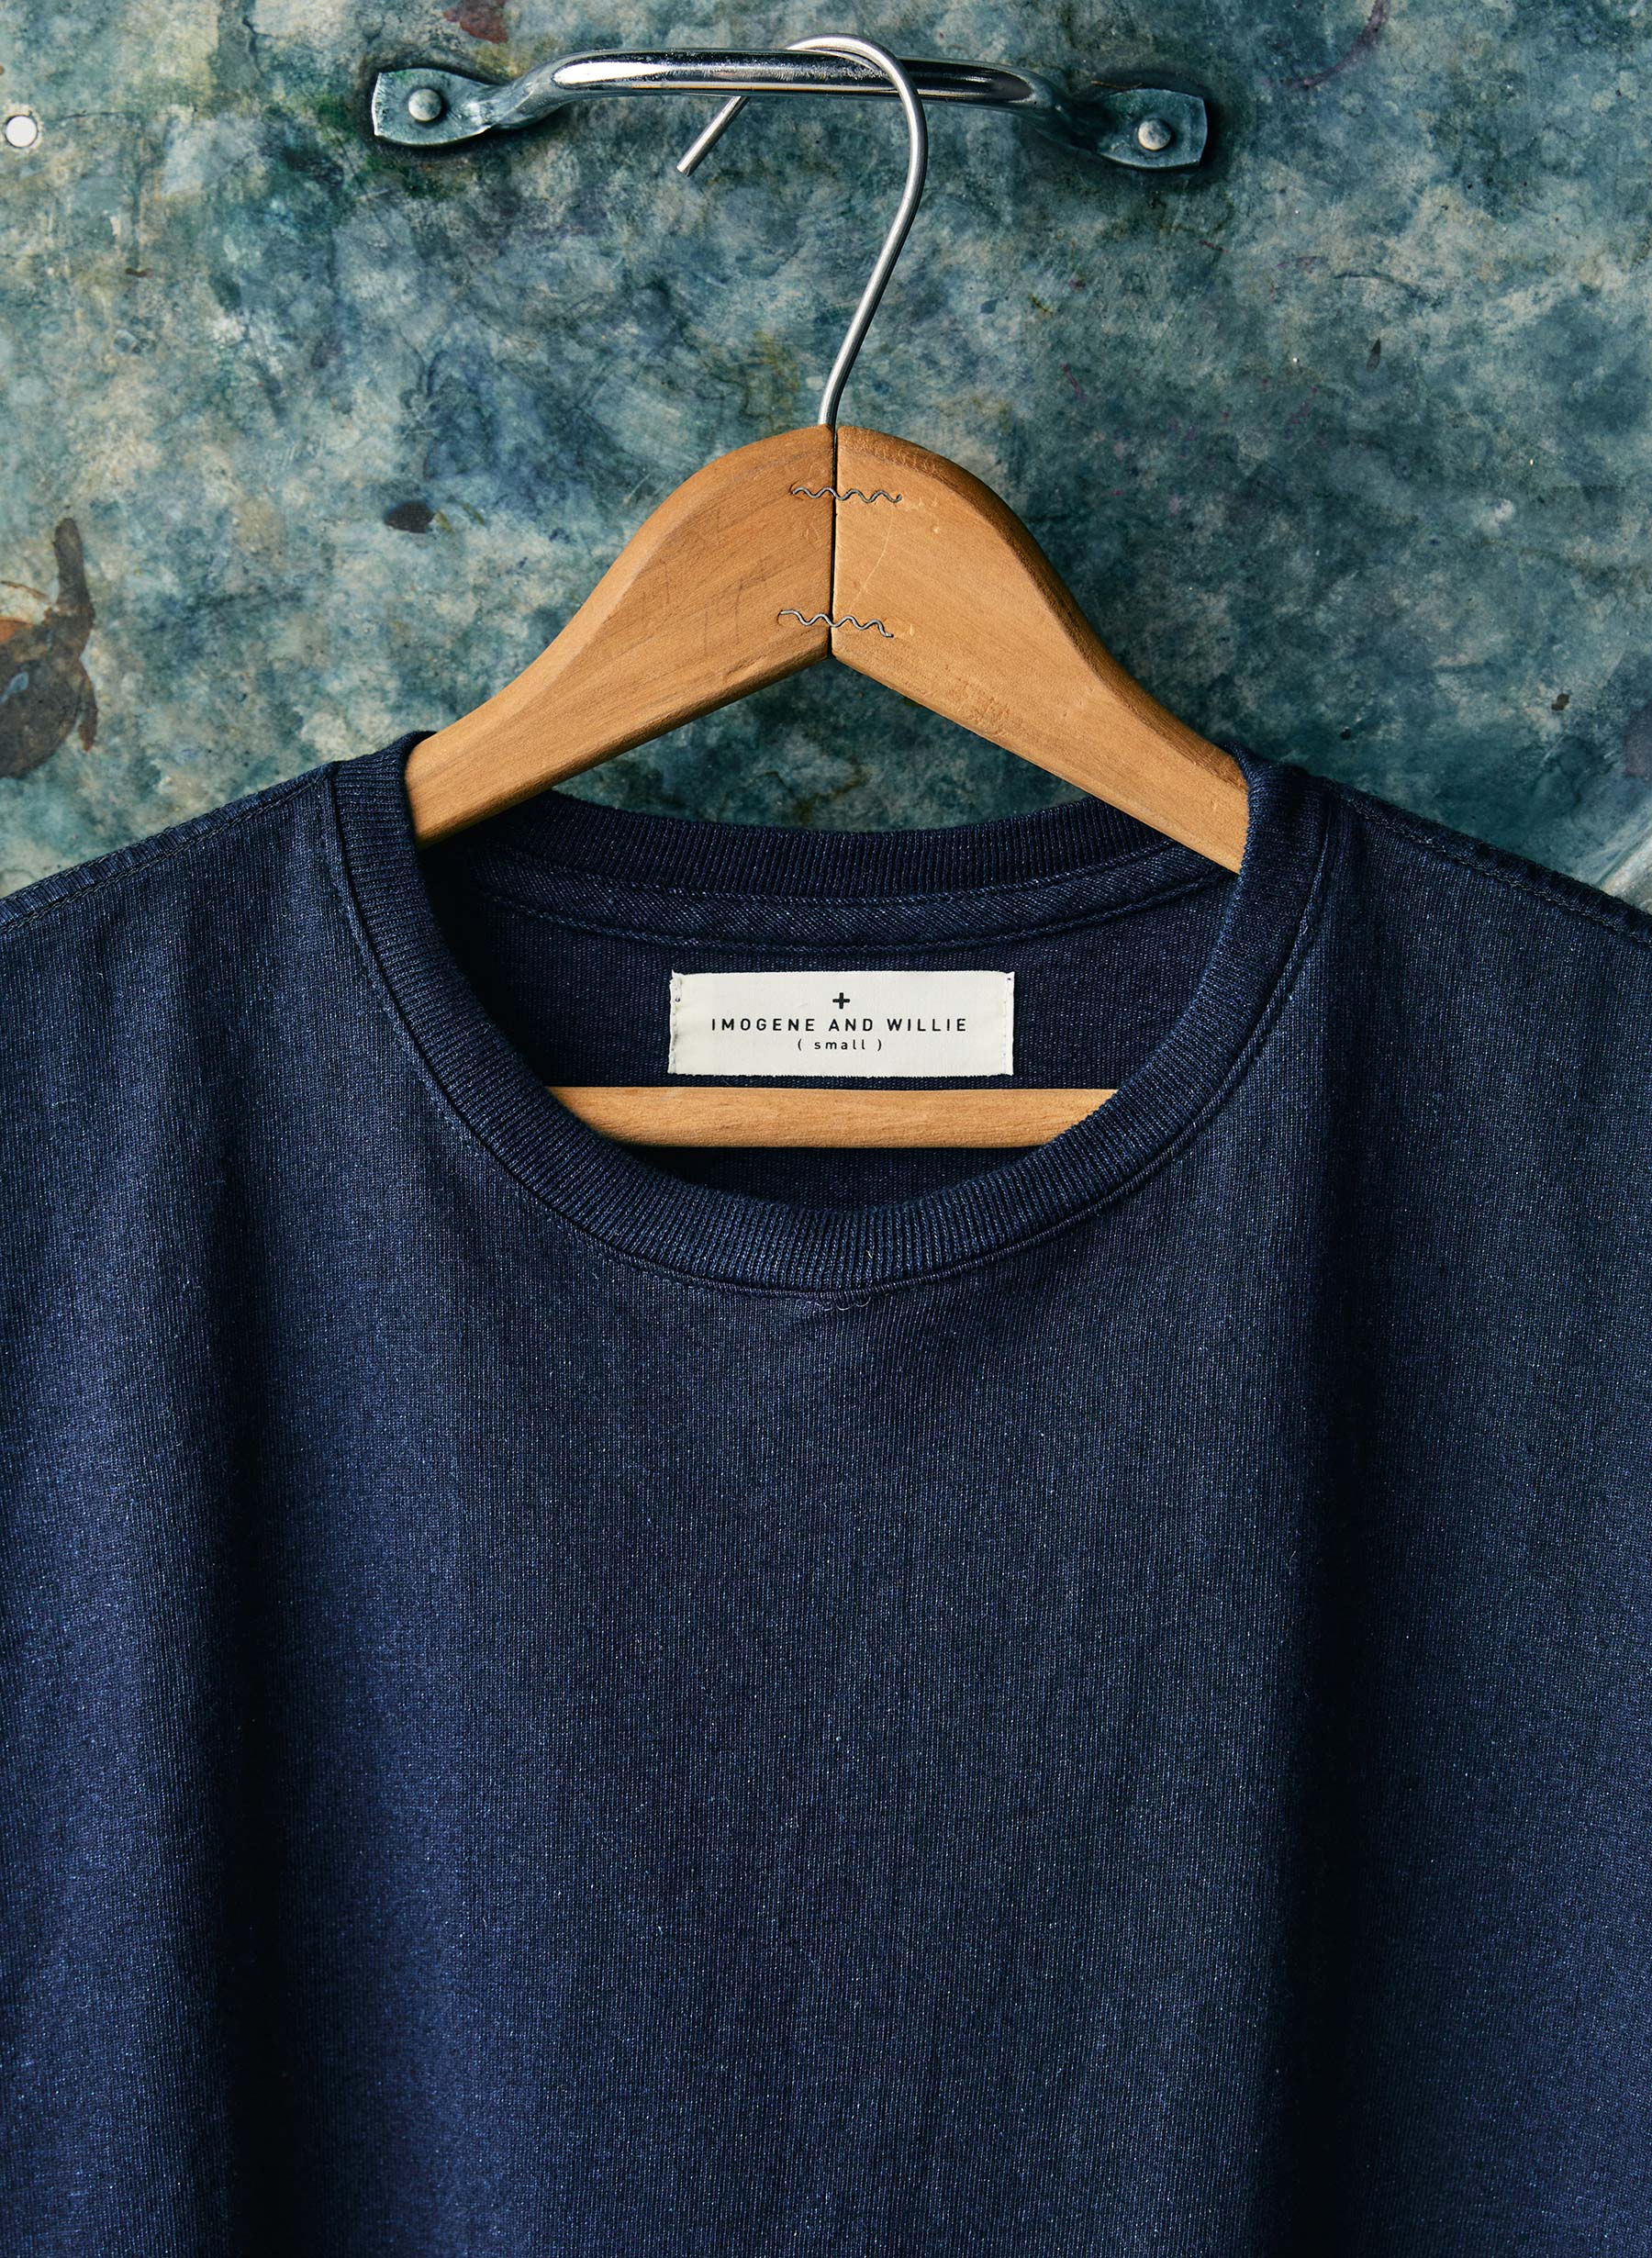 Outerwear, Neck, Sleeve, Clothes hanger, Dress shirt, Grey, Collar, T-shirt, Denim, Font